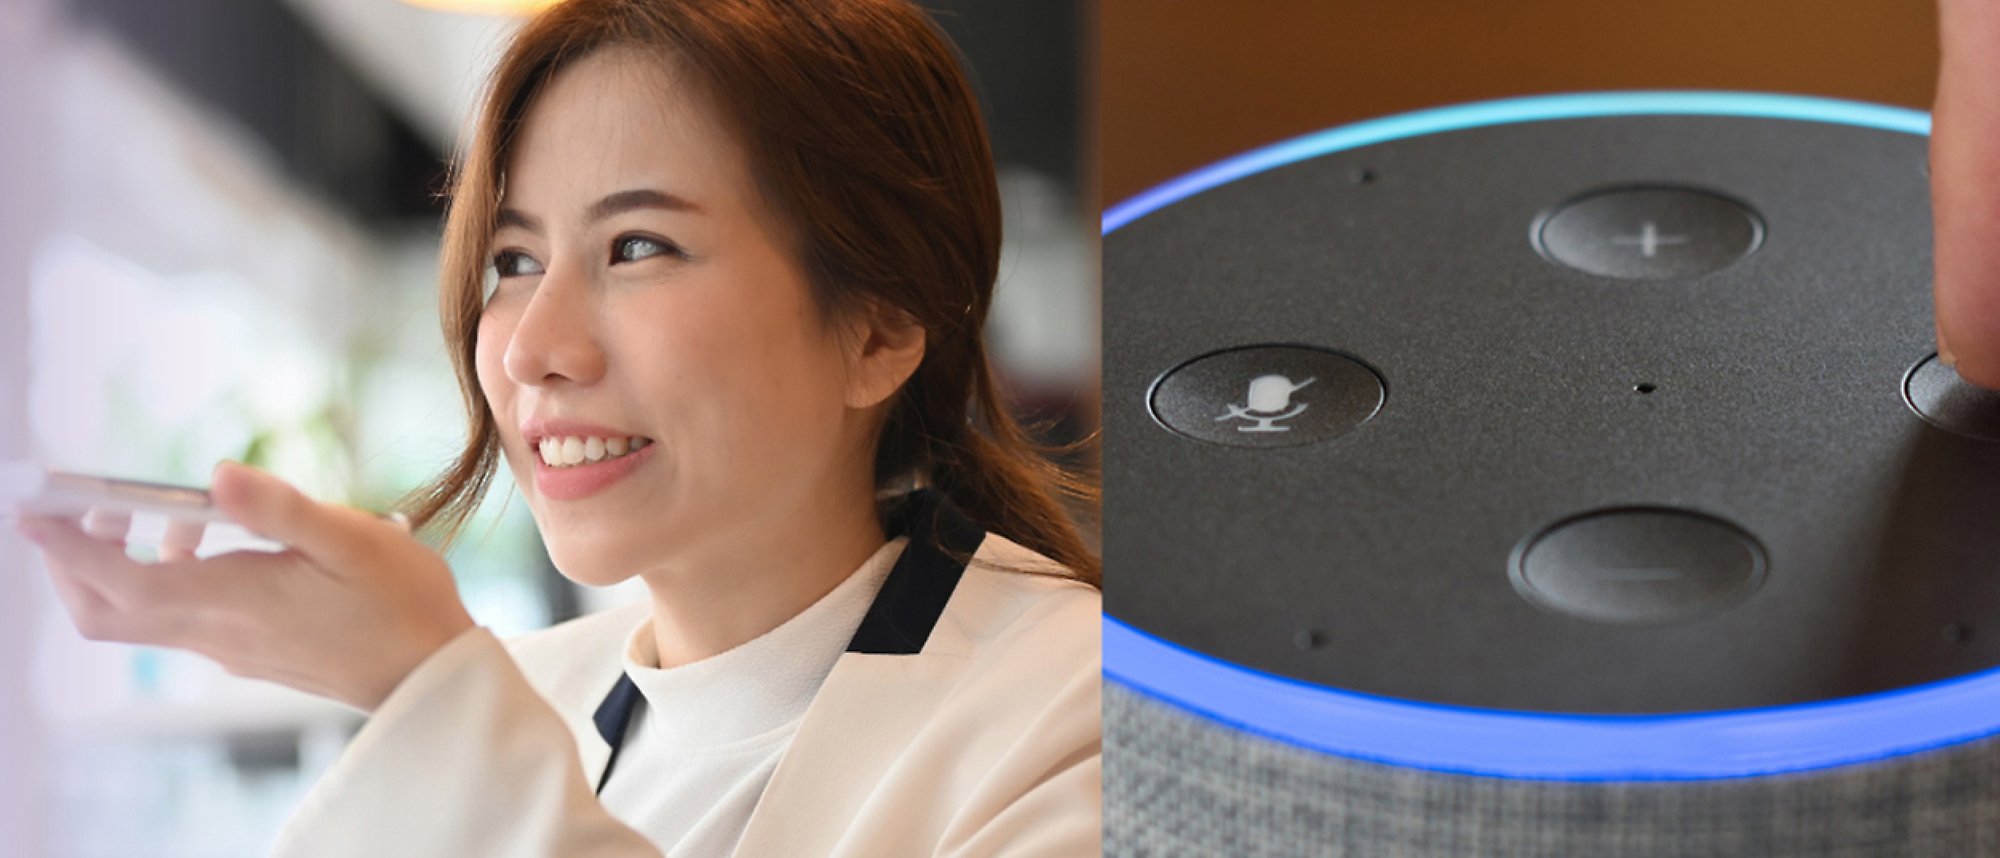 Une femme parlant au téléphone et une image d'Amazon Alexa avec des lumières bleues et des commandes sonores